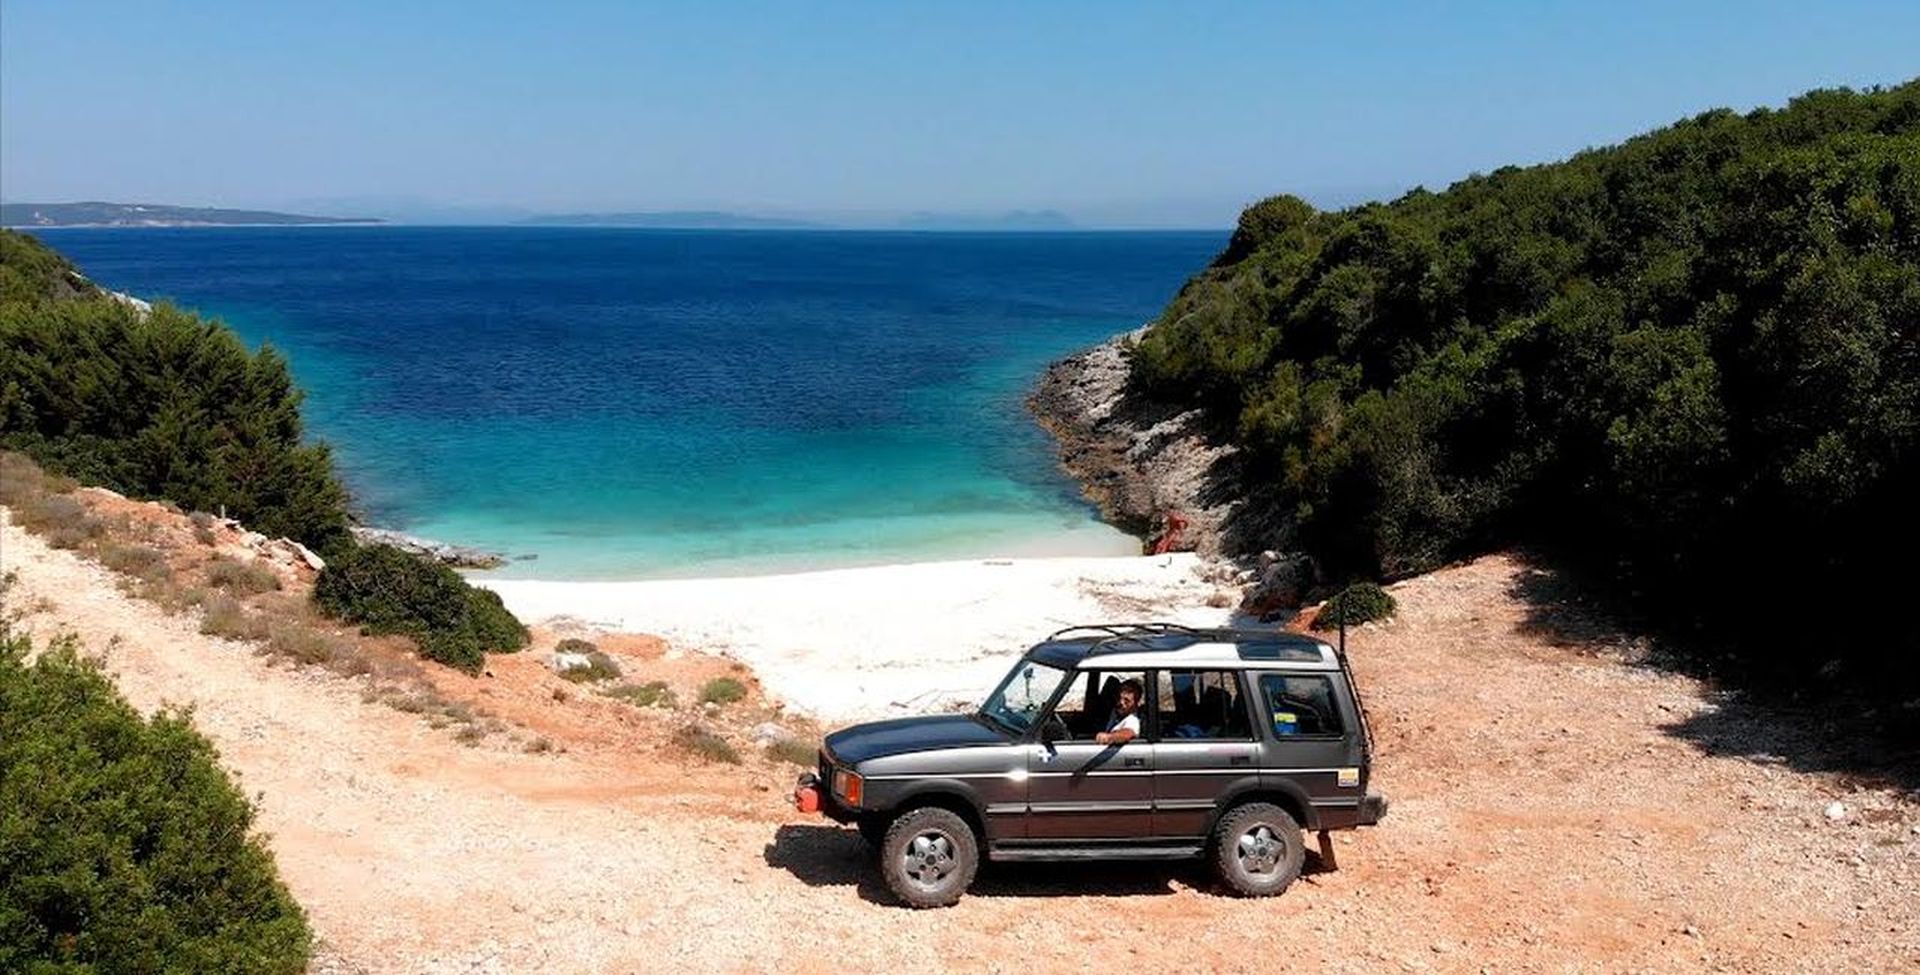 Περιήγηση με τζιπ στις καλύτερες παραλίες της Λευκάδας